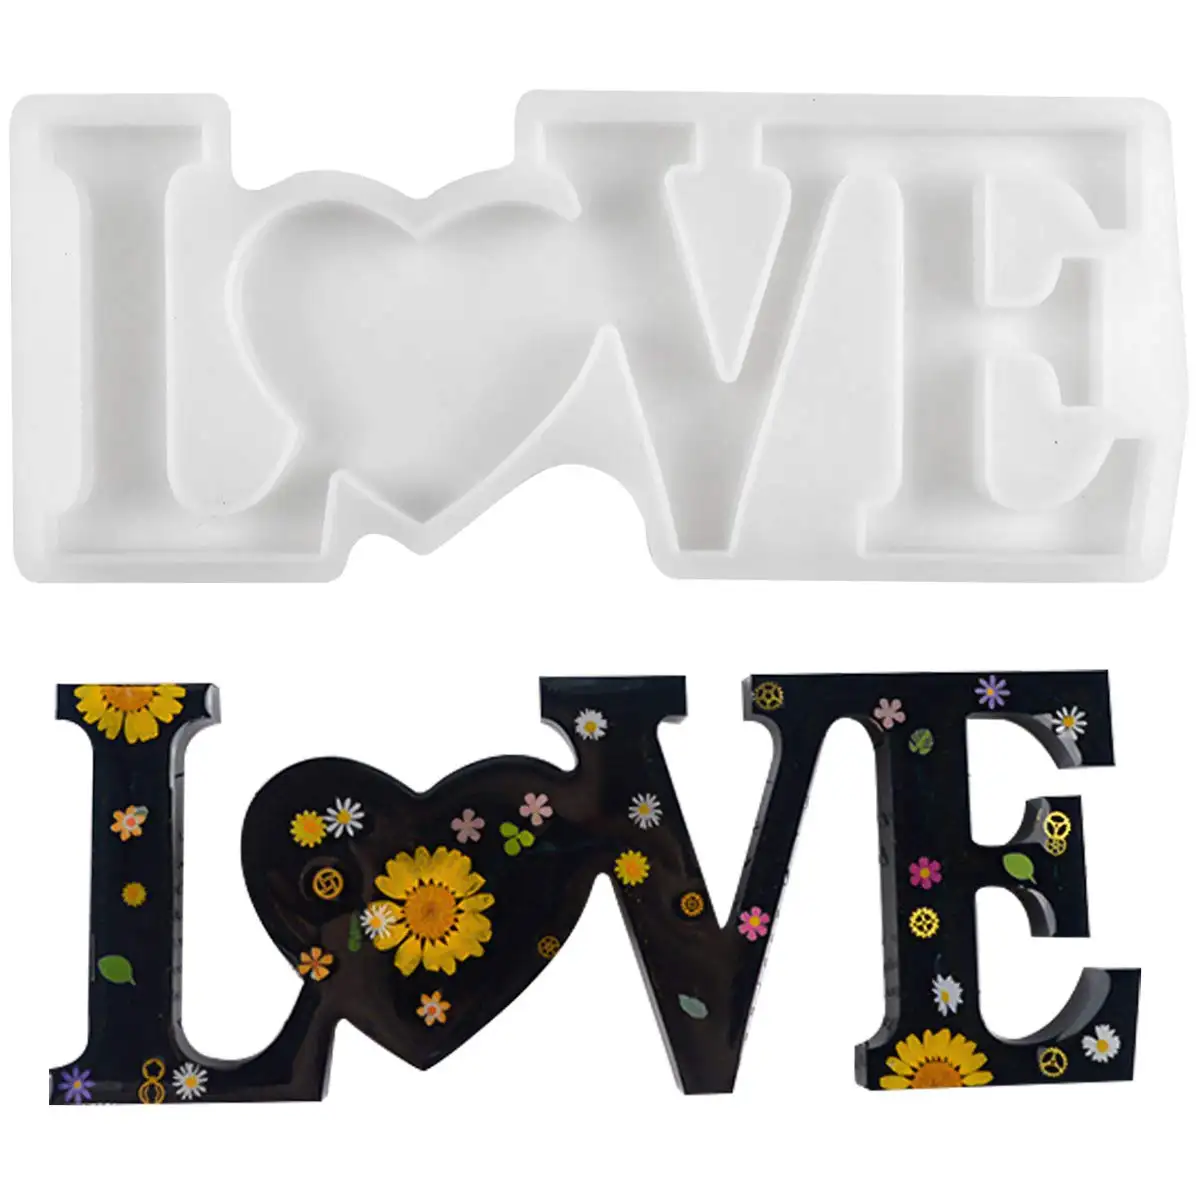 Moldes de resina de molde xinchout, 3 peças, amor/casa/família, resina epóxi, artesanato faça você mesmo, decoração de mesa